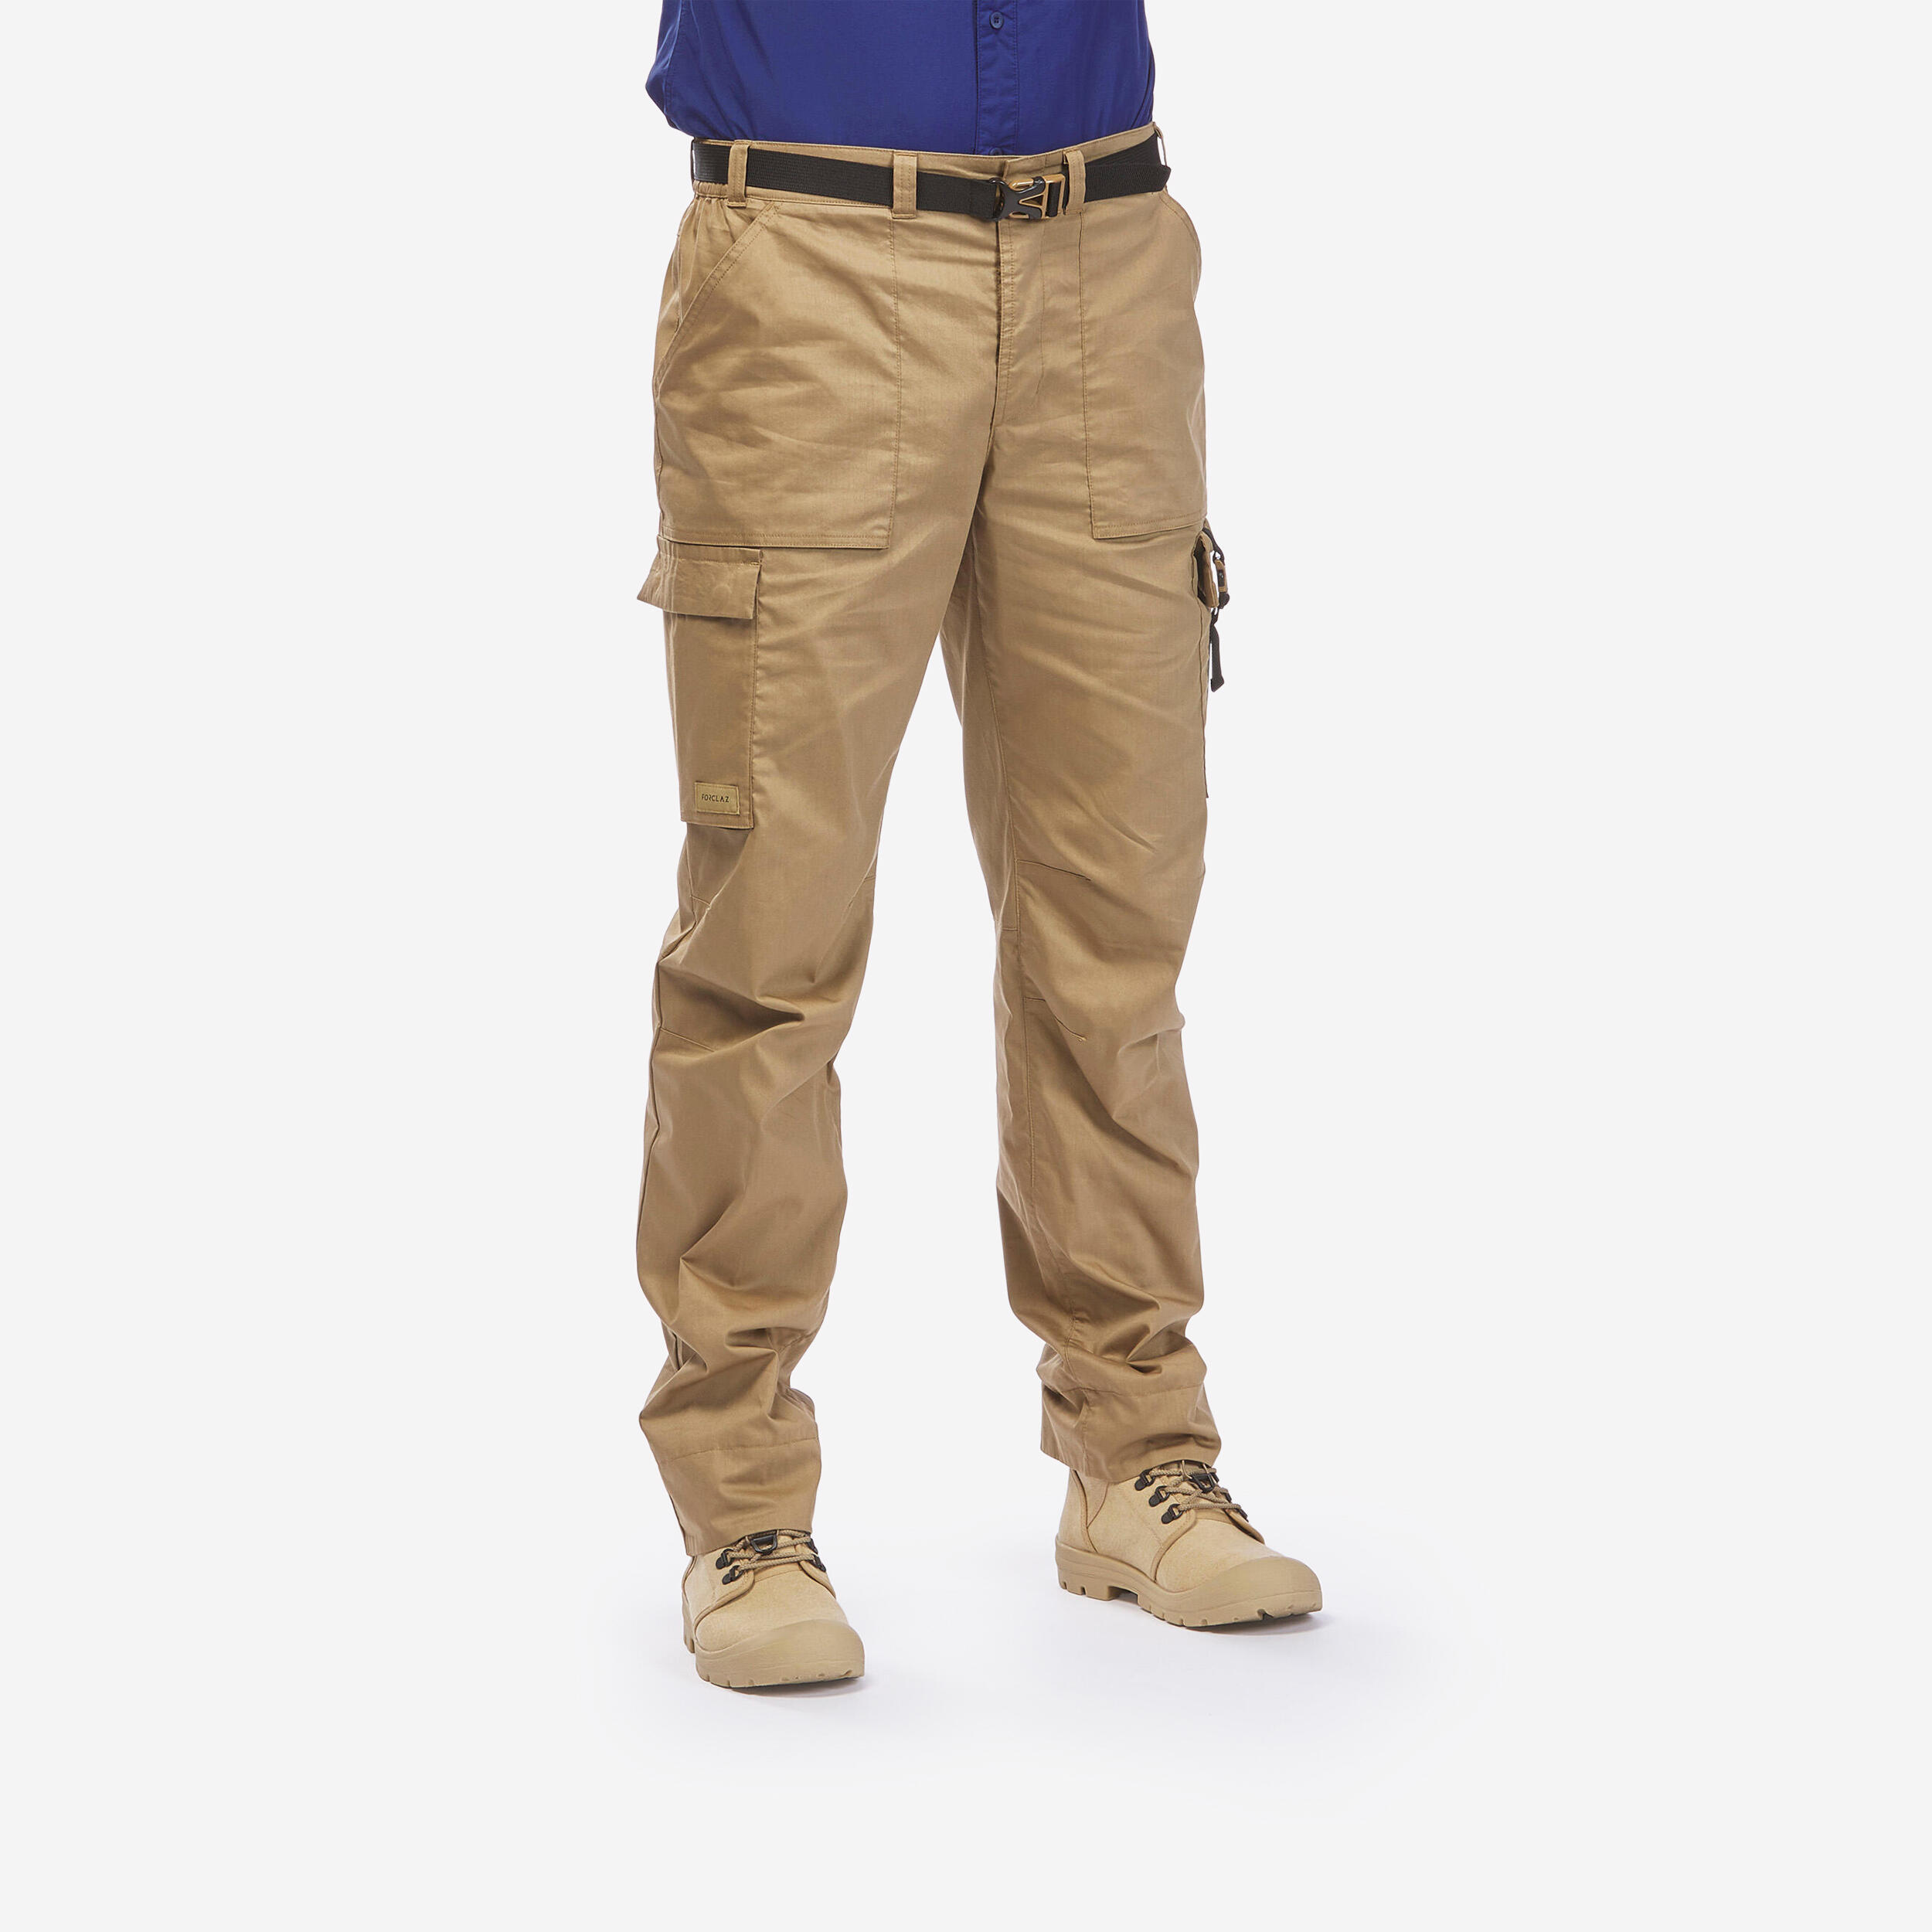 FORCLAZ Men’s Anti-UV Desert Trekking Trousers DESERT 900 - Brown